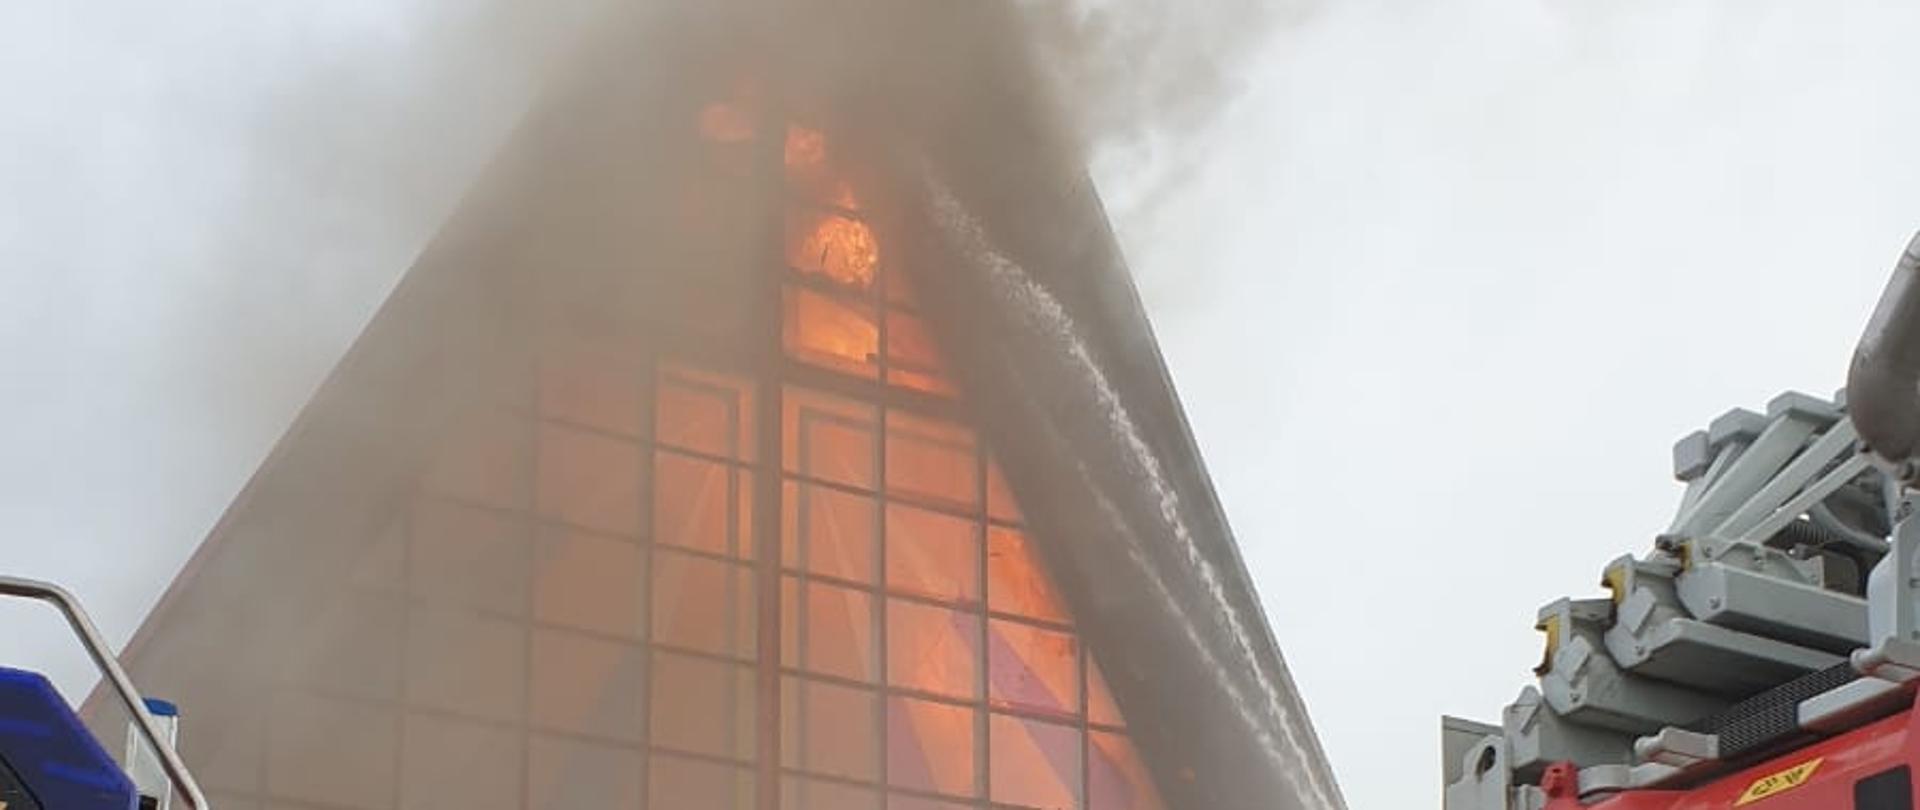 W centralnej części zdjęcia widok płonącego kościoła, płomienie wydostają się przez wybite w górnej części witraże. W dole po obu stronach stoją pojazdy pożarnicze i sylwetki strażaków rozwijających węże.